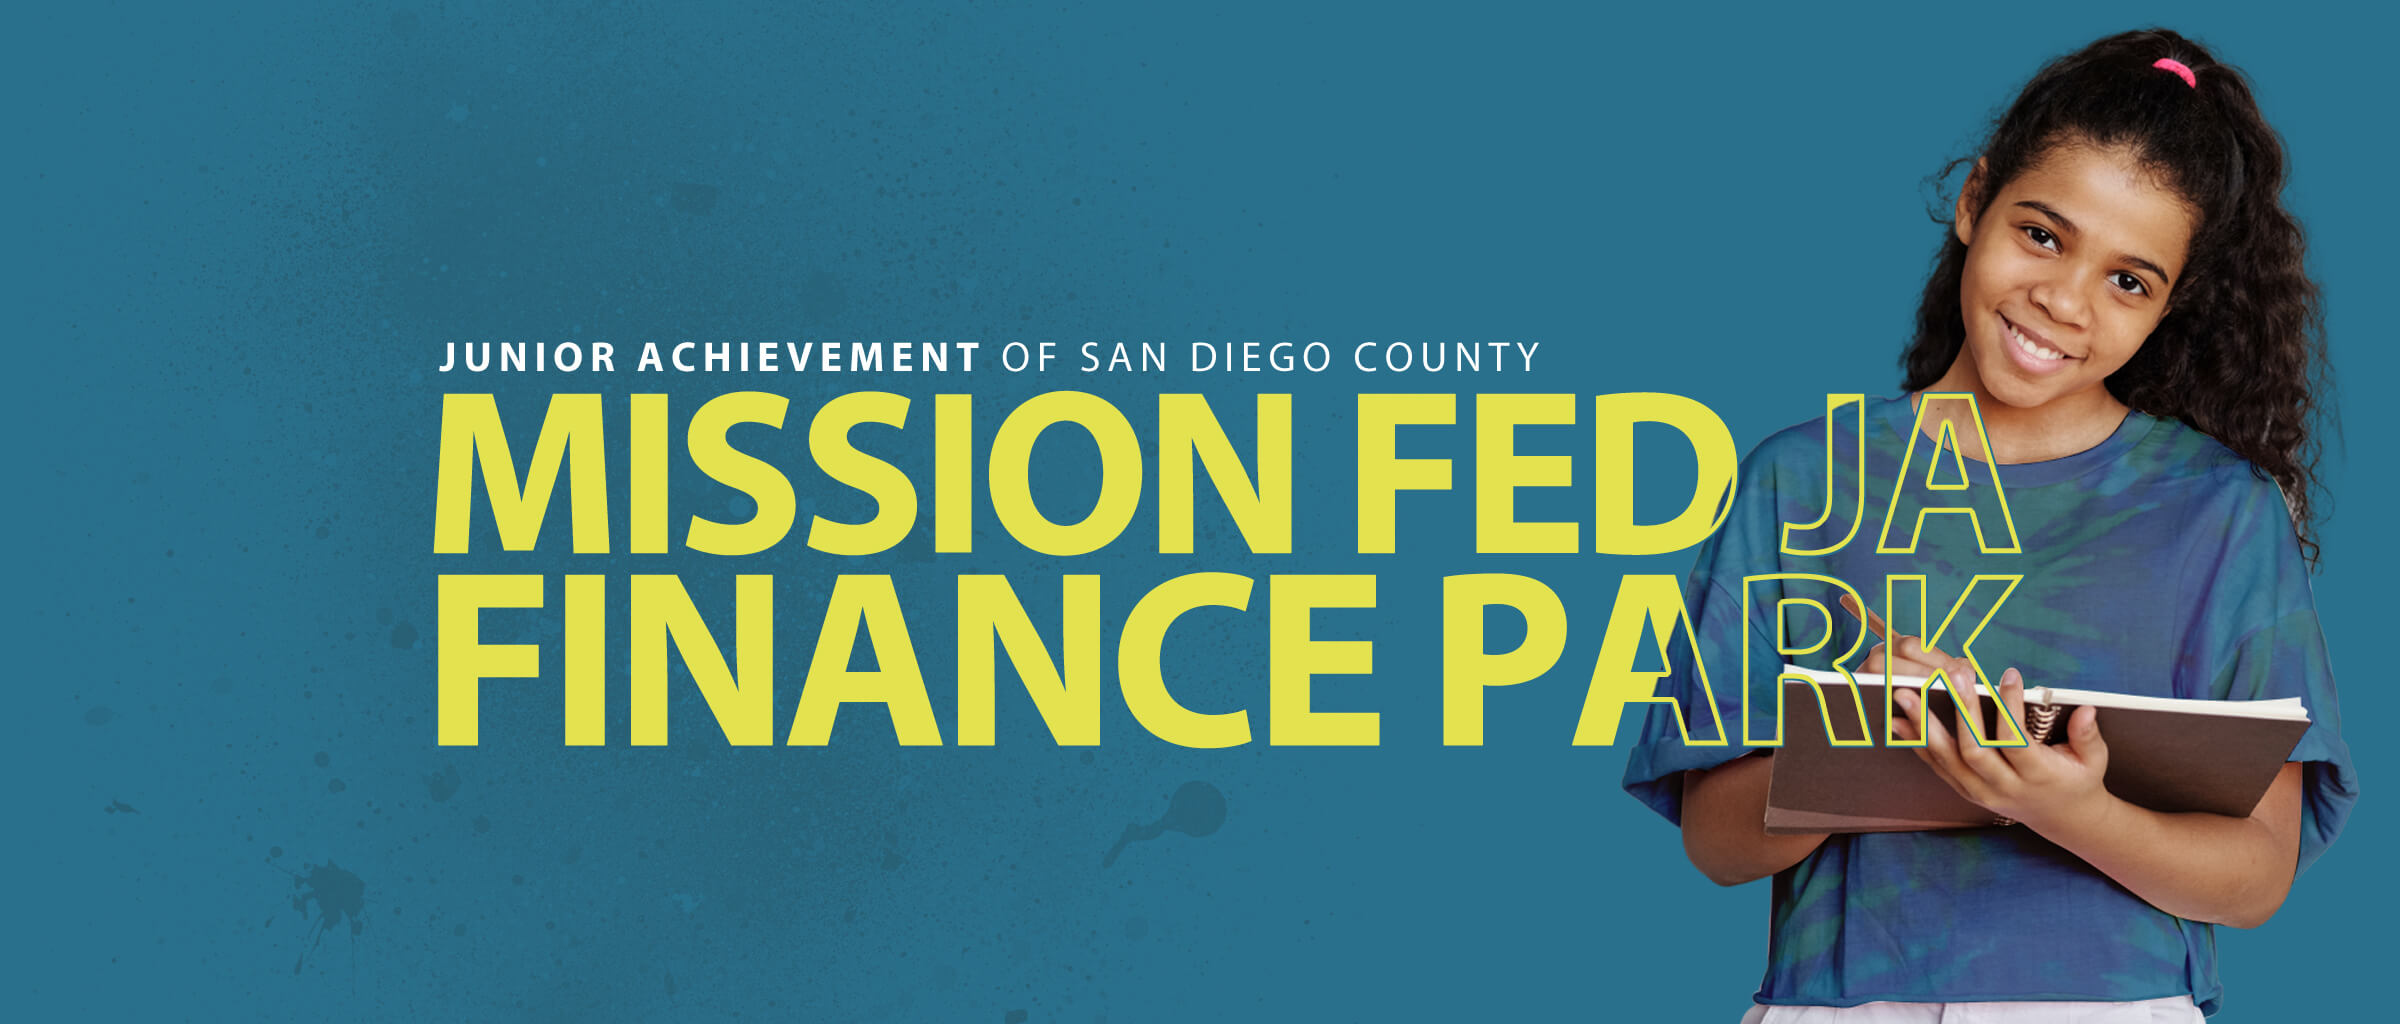 Mission Fed JA Finance Park